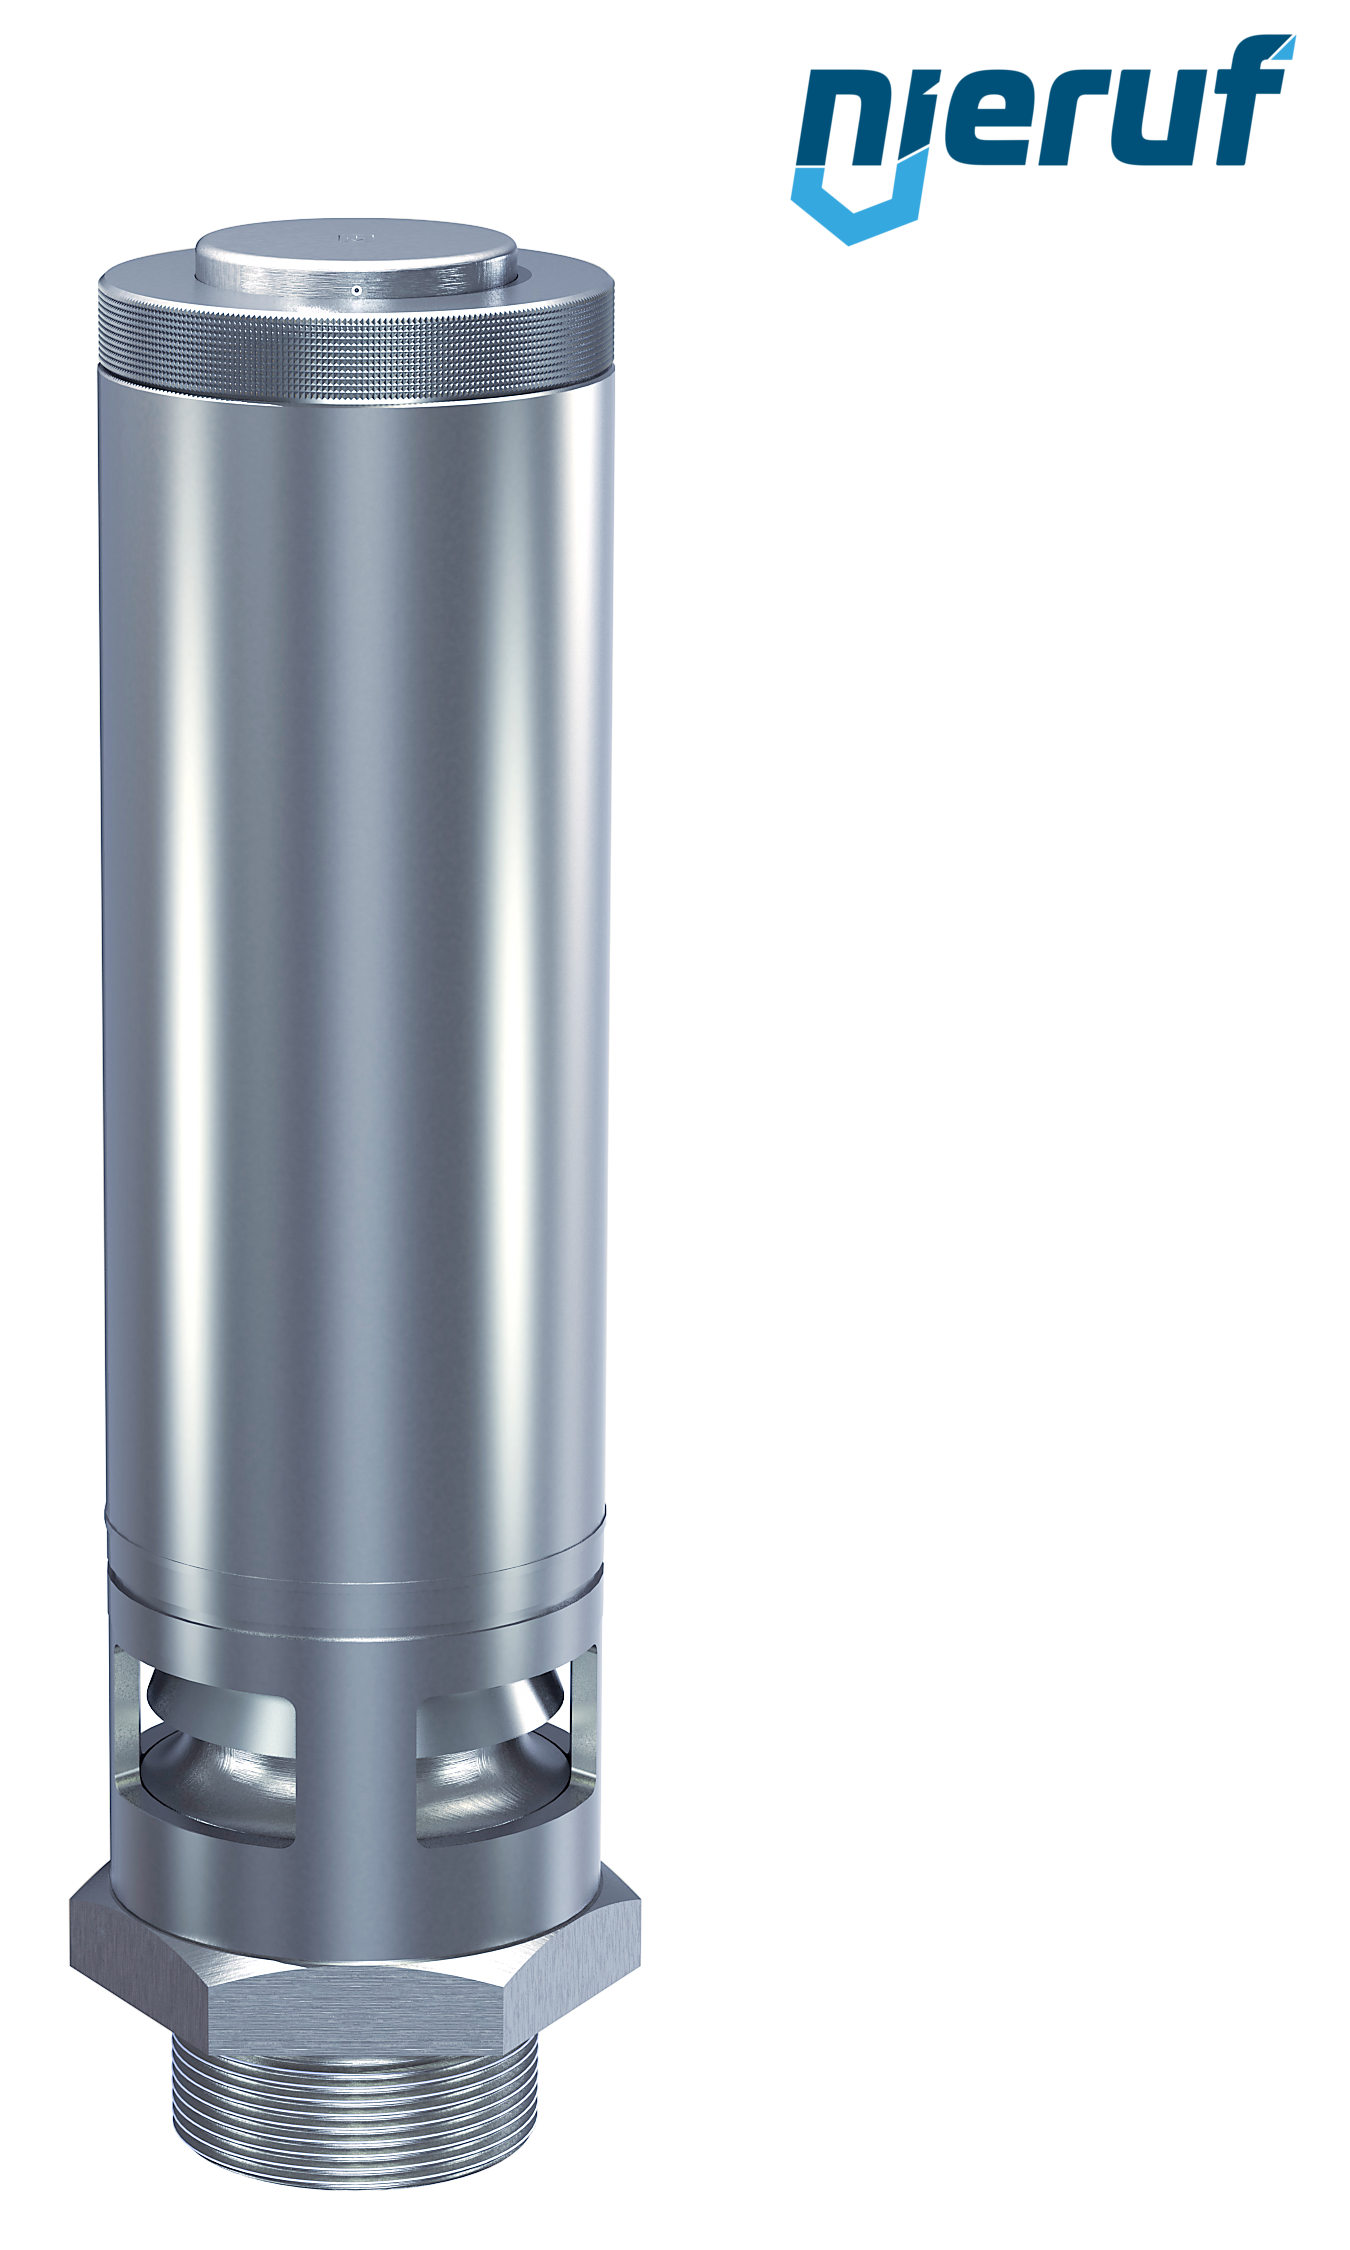 valvola di sicurezza 1 1/4" SV02 per aria compressa, acciaio inox FKM